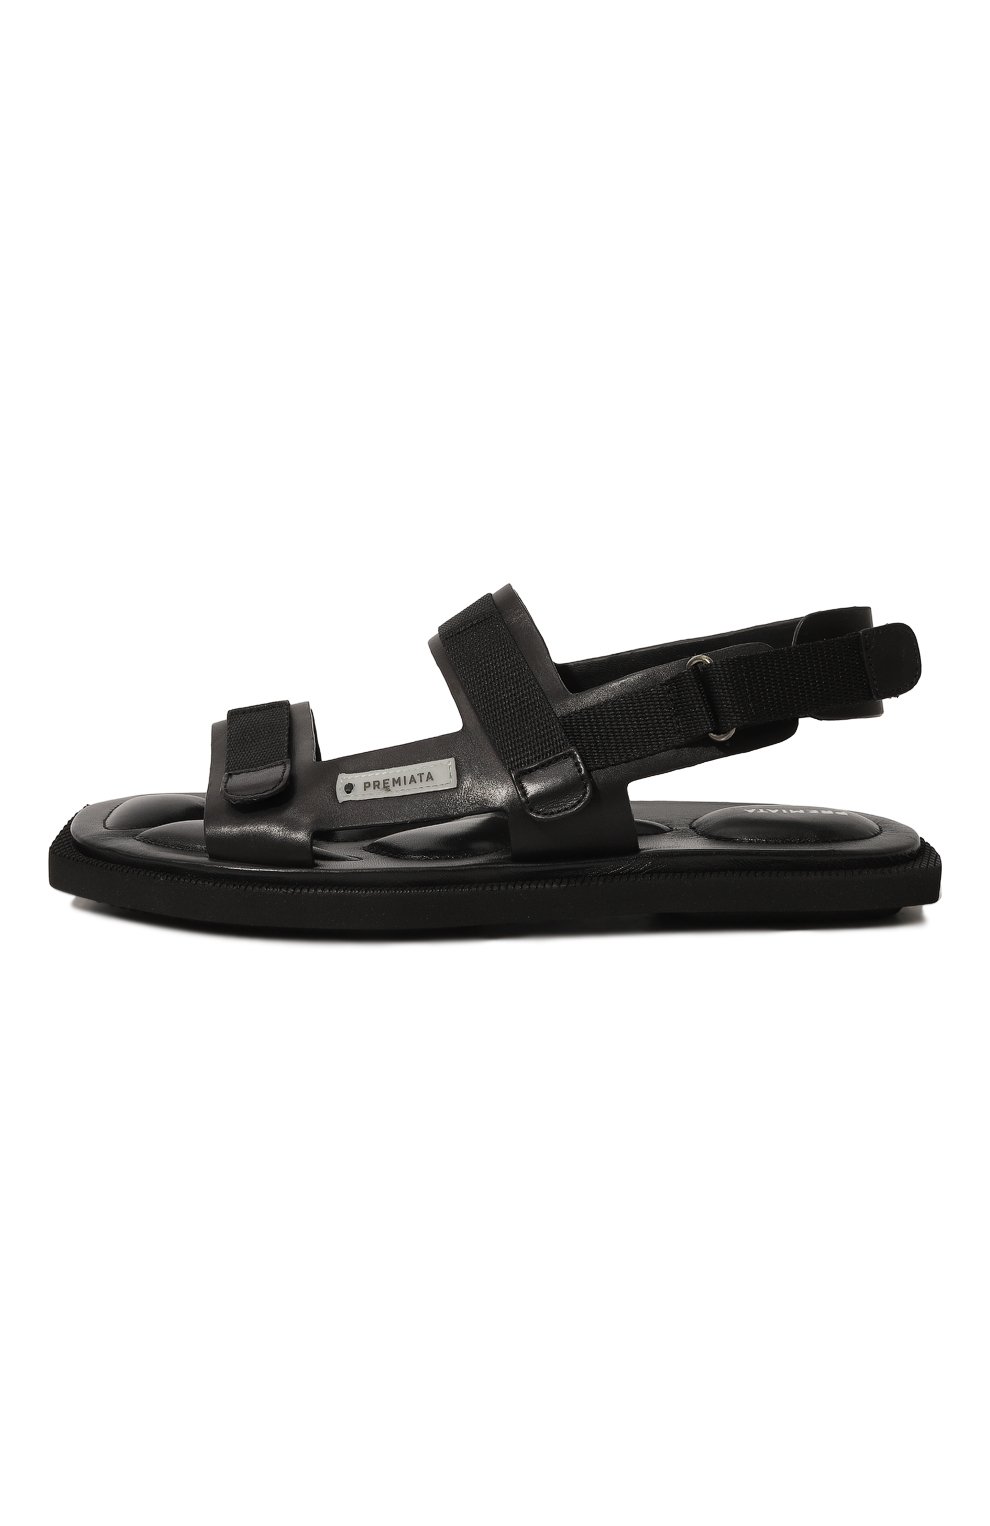 Кожаные сандалии Premiata M6433/VANITY, цвет чёрный, размер 37.5 M6433/VANITY - фото 4